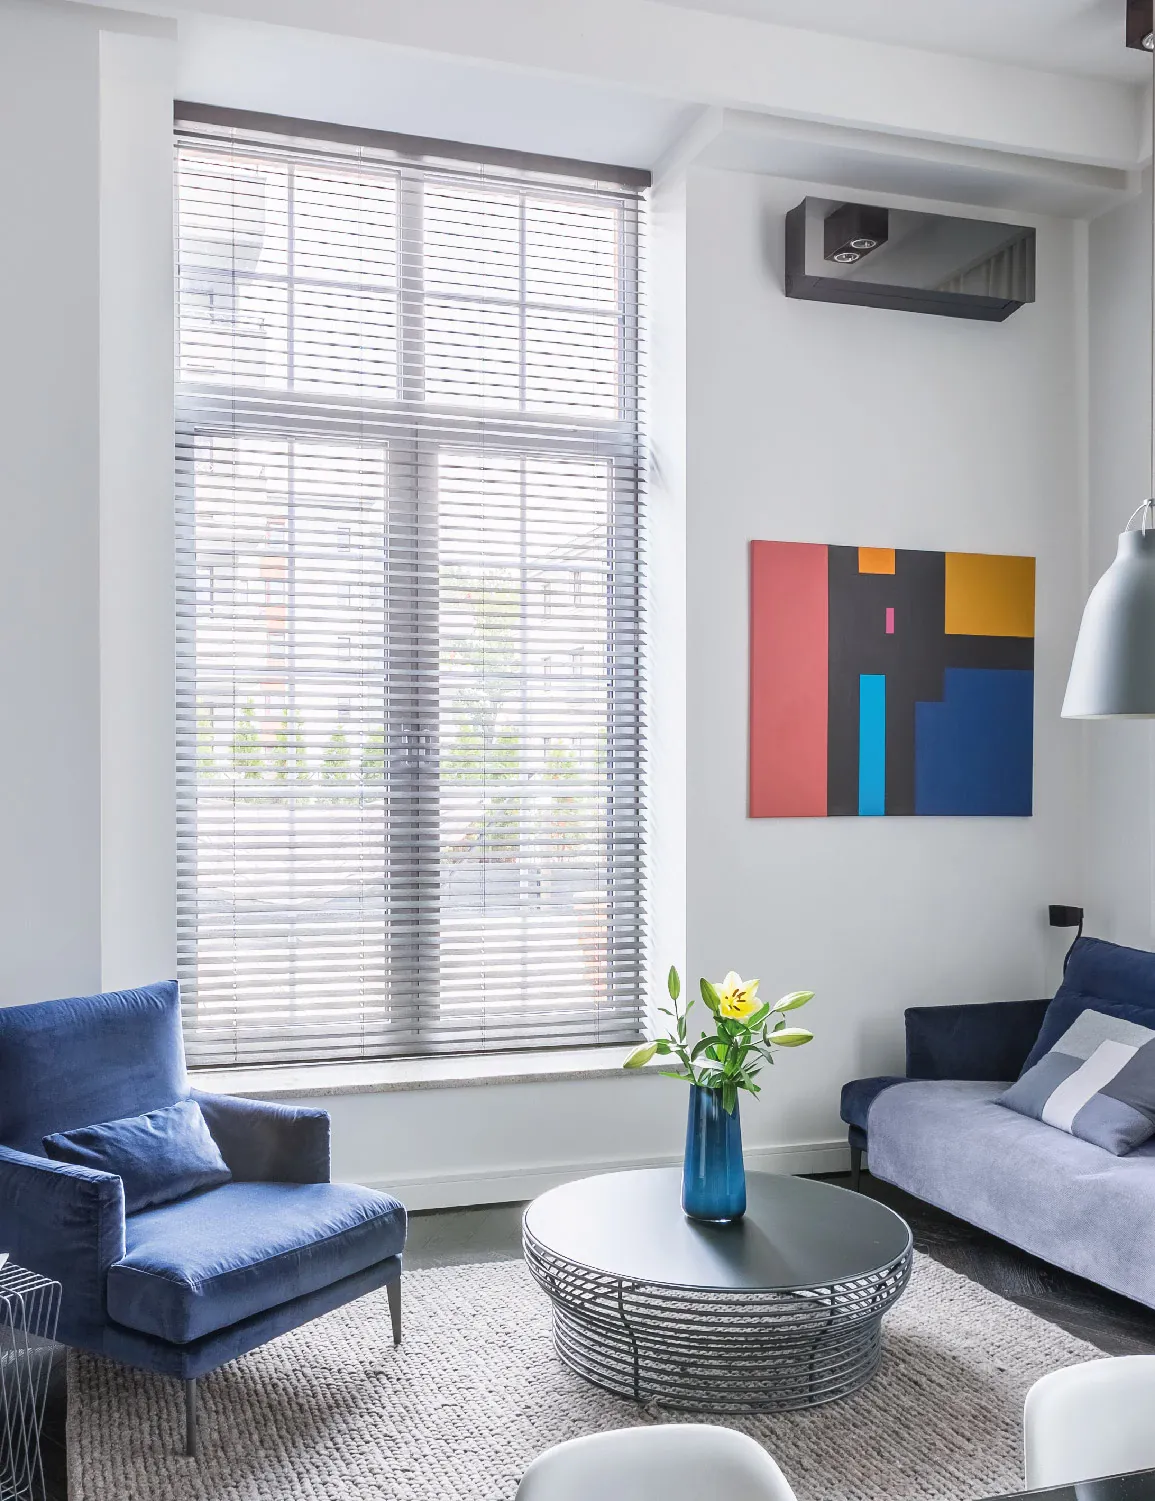 La persiana horizontal de aluminio es sutíl y práctica, ideal para espacios compartidos de uso contínuo.